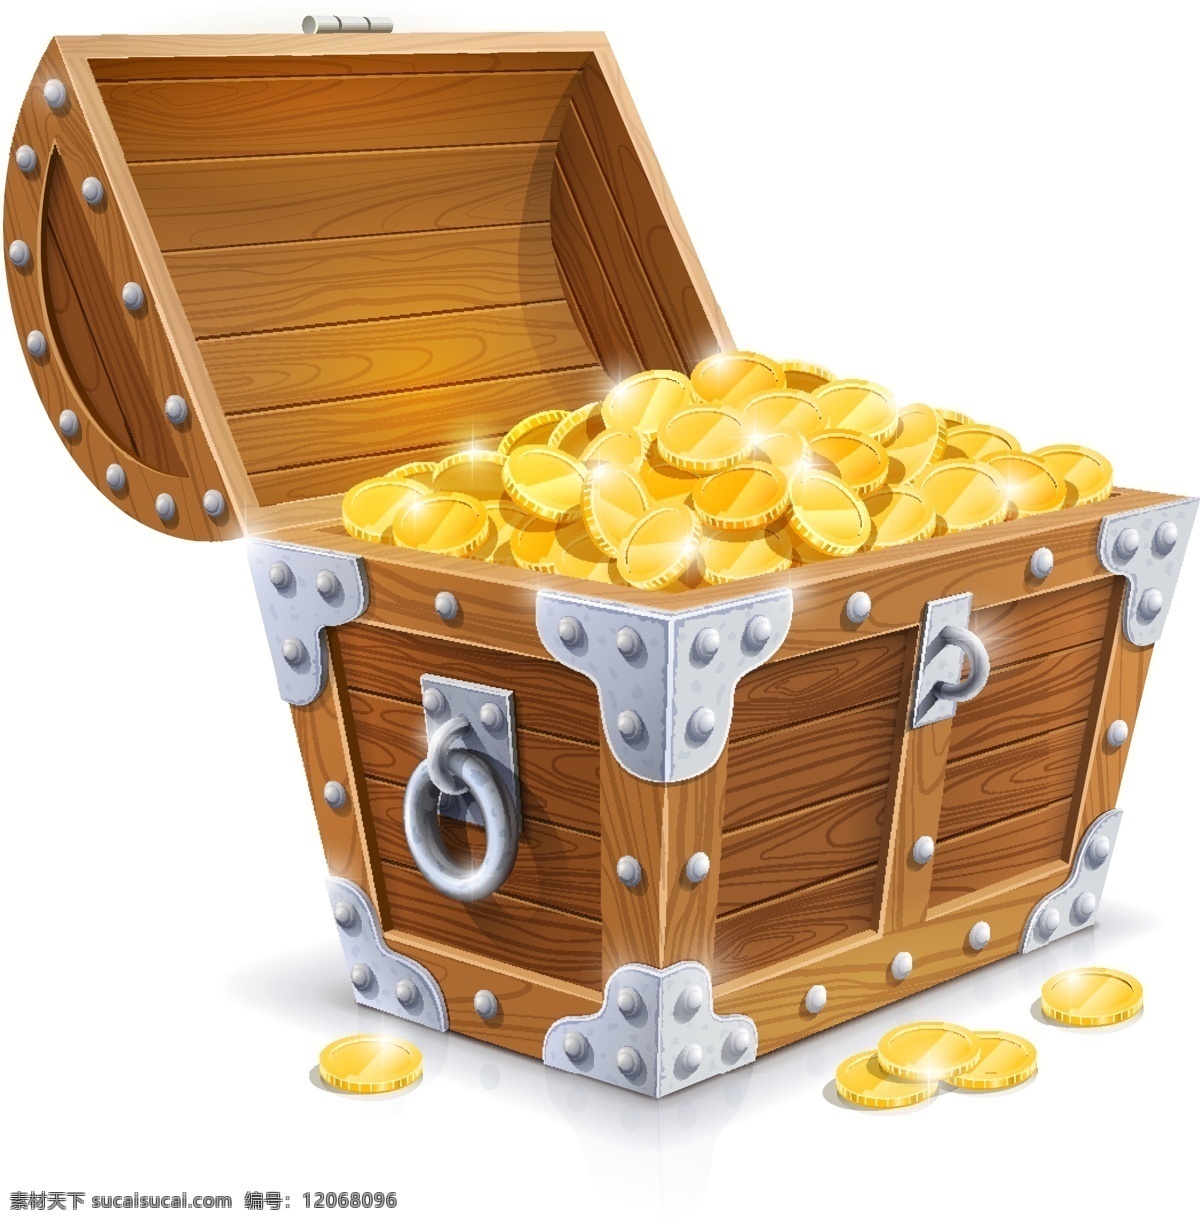 装满 金币 木 宝 箱 宝箱 金色 箱子 木箱 矢量 矢量图 其他矢量图